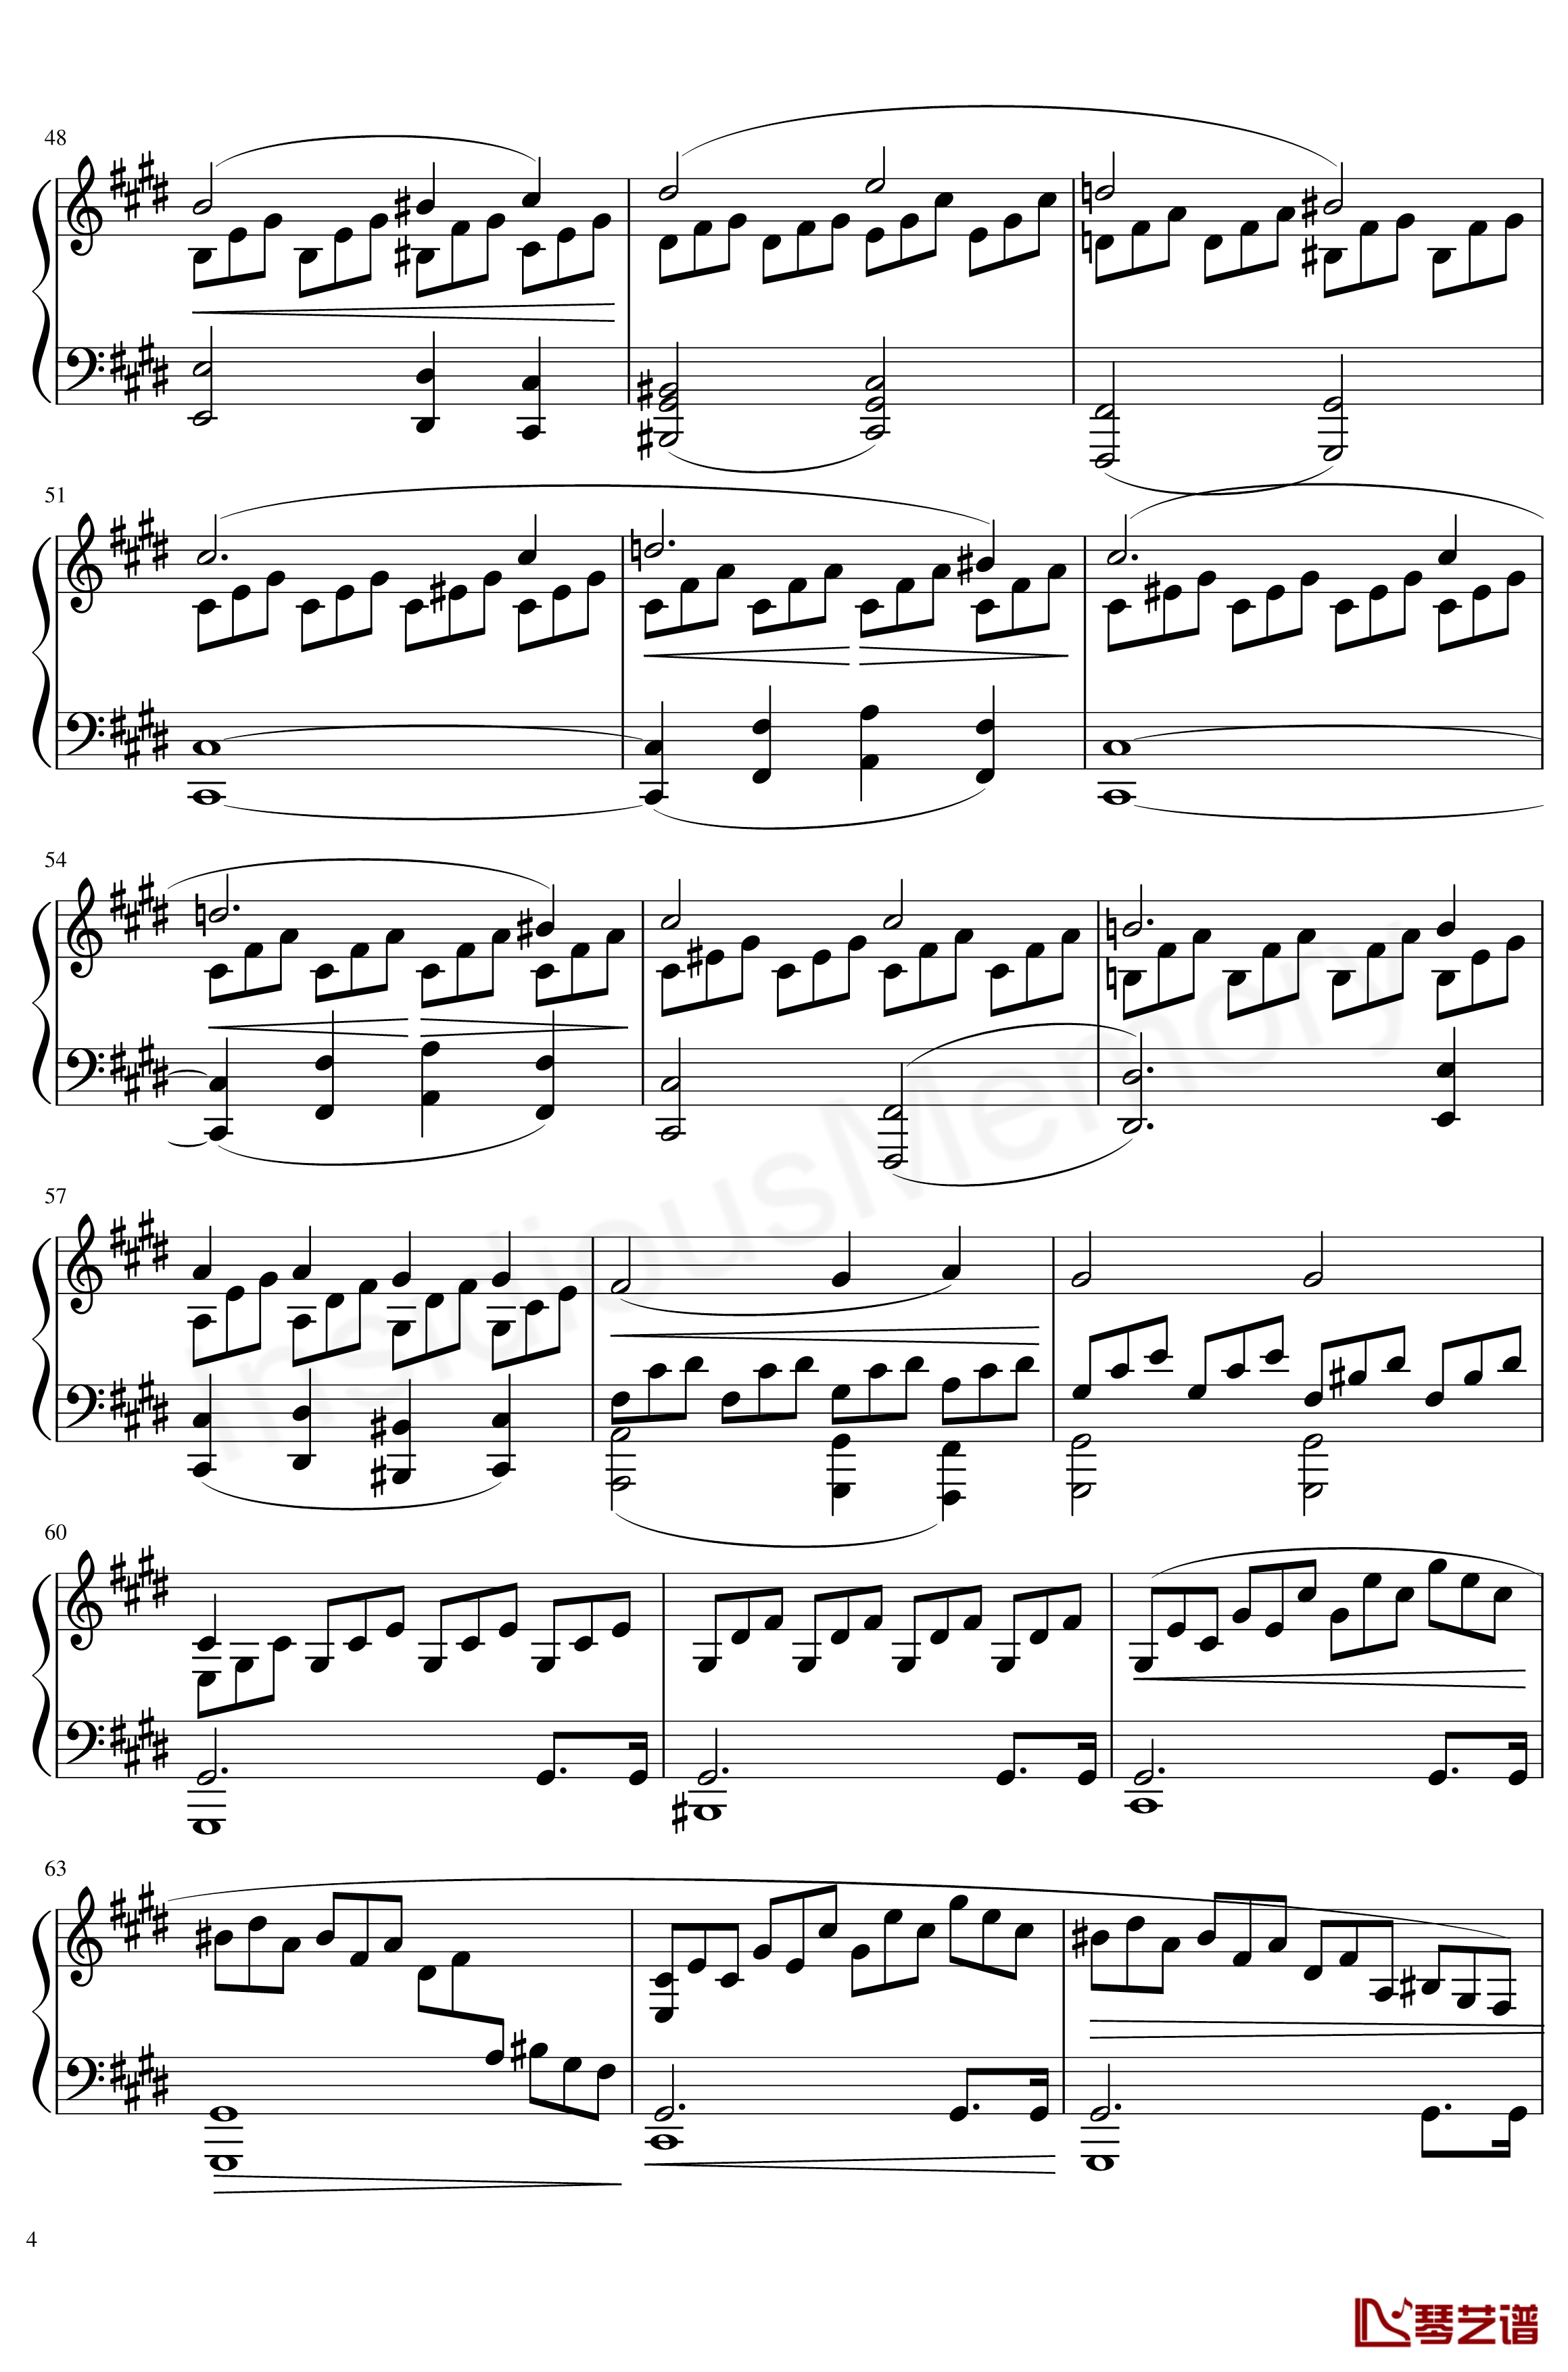 月光奏鸣曲钢琴谱-贝多芬-beethoven4